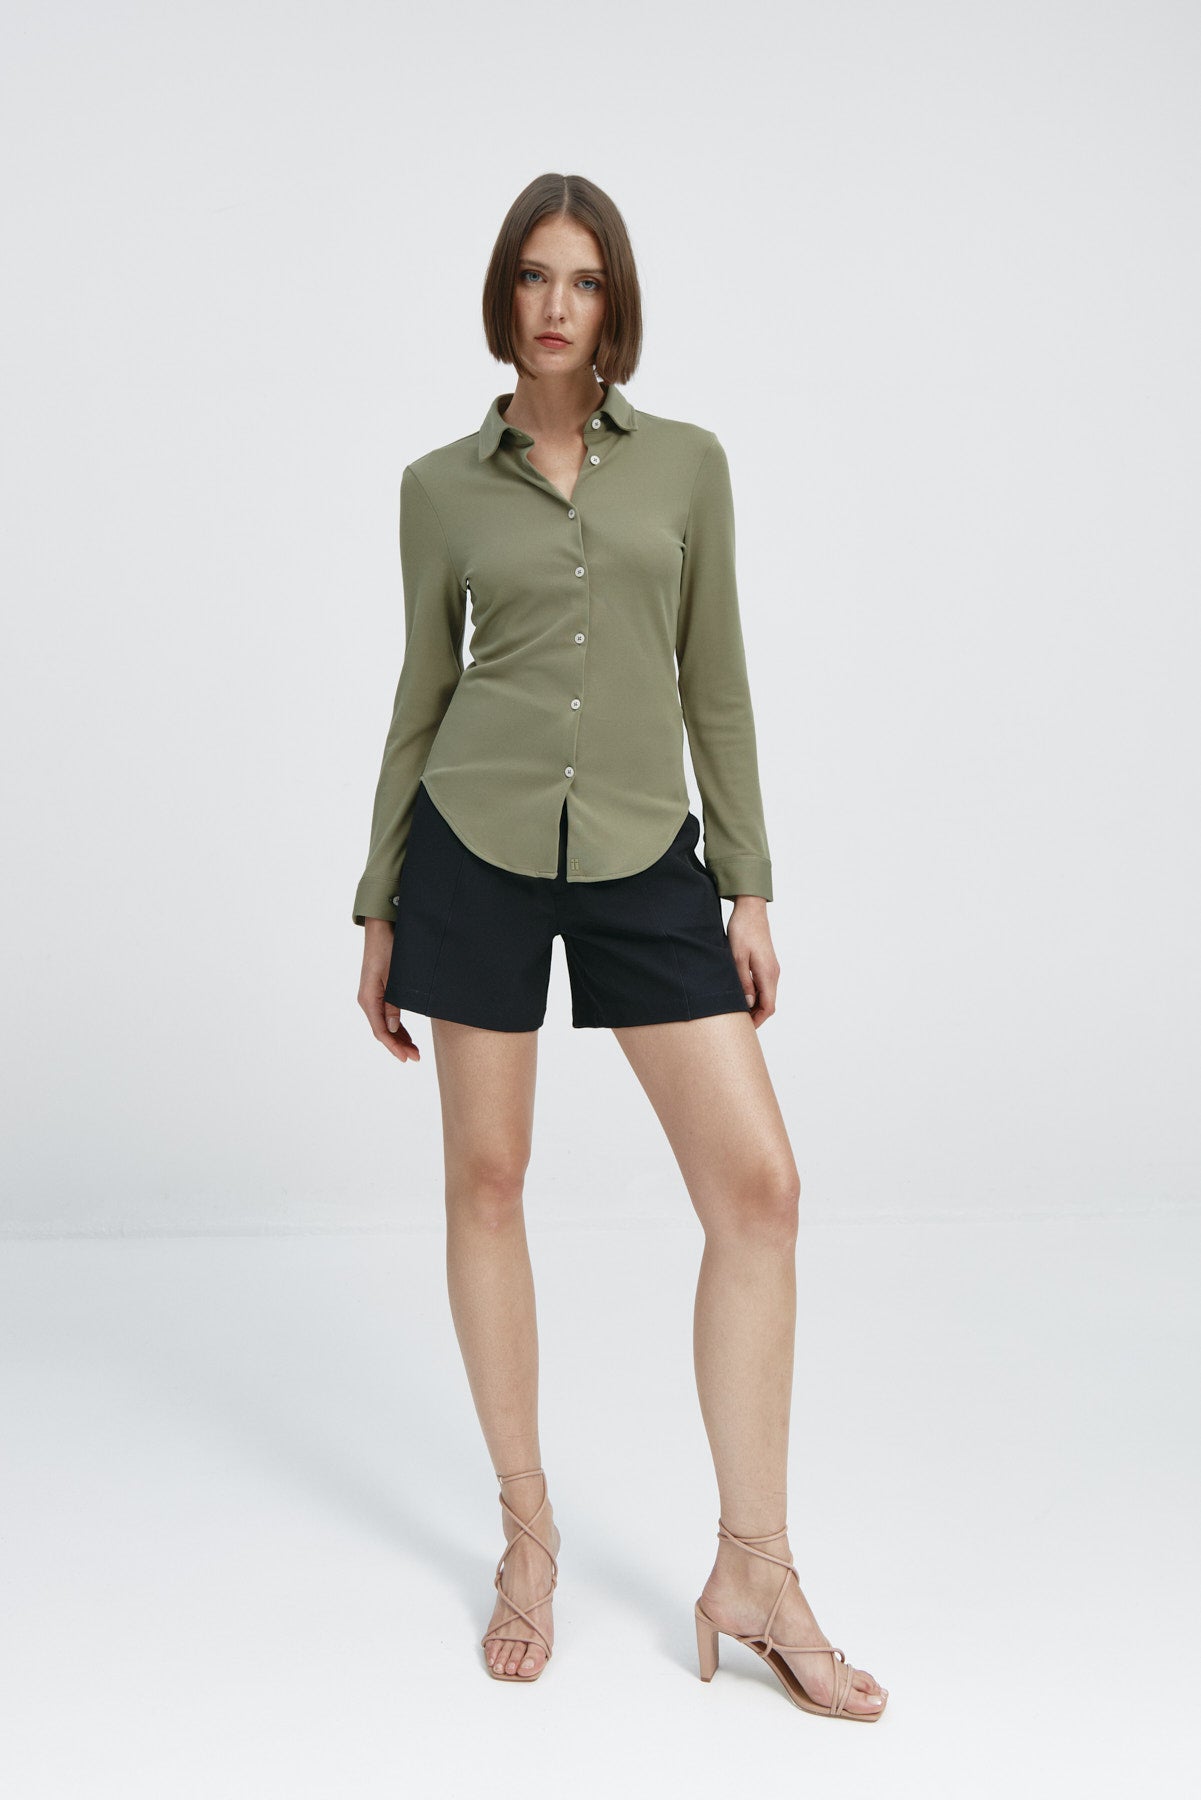 Camisa para mujer slim color verde malaquita, básica y versátil. Foto flexibilidad